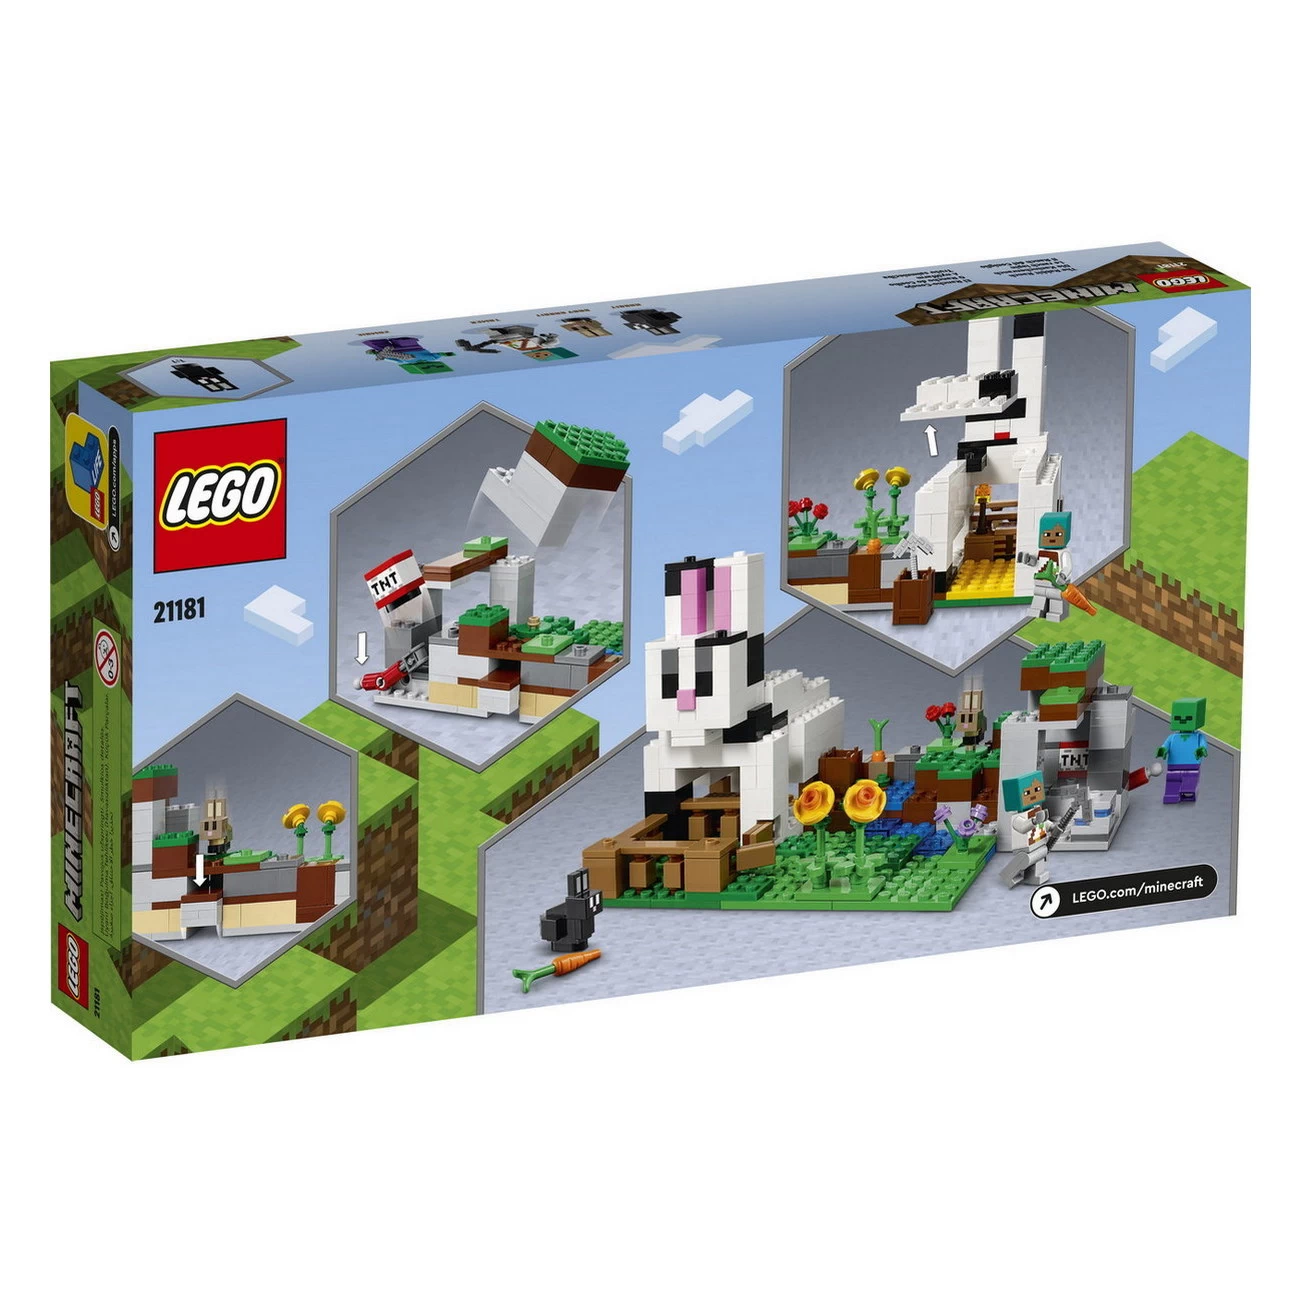 LEGO Minecraft 21181 - Die Kaninchenranch